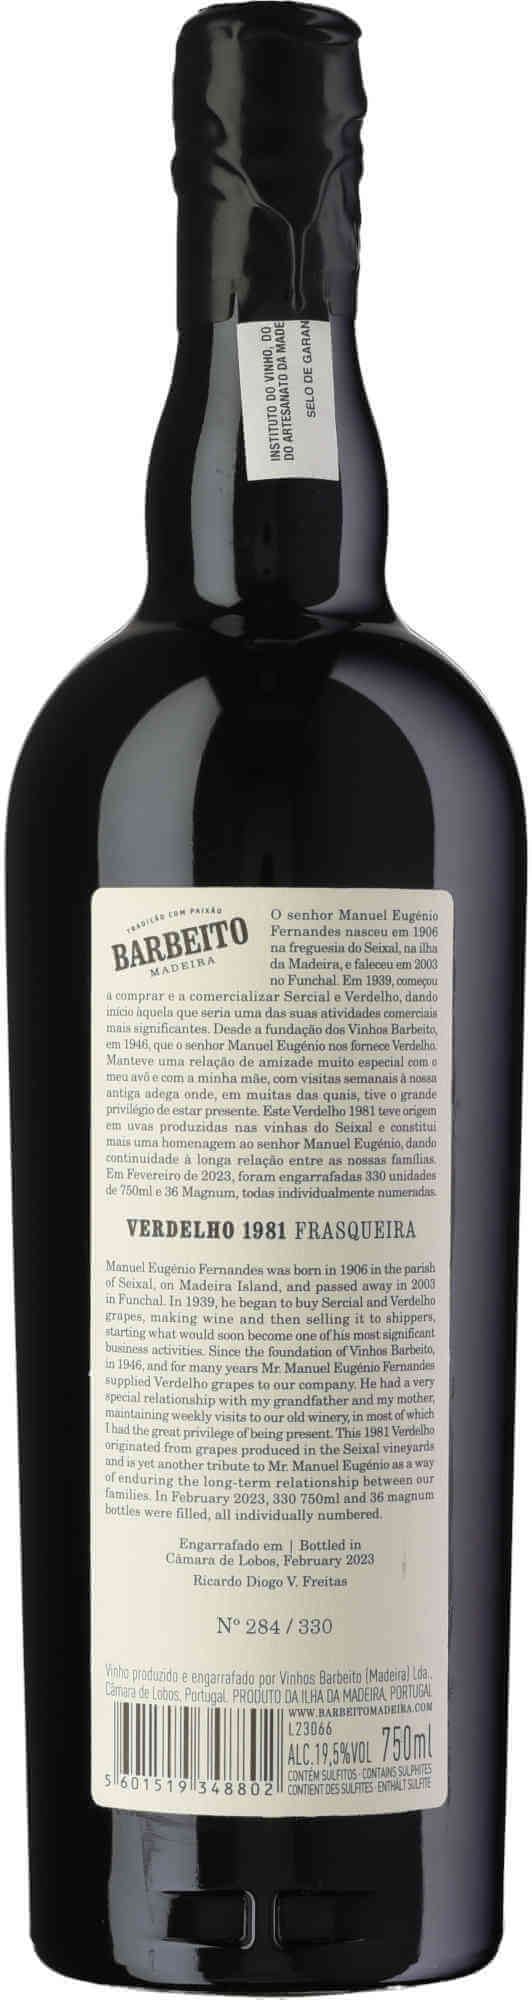 Barbeito-Verdelho-Frasqueira-MEF-1981-Back